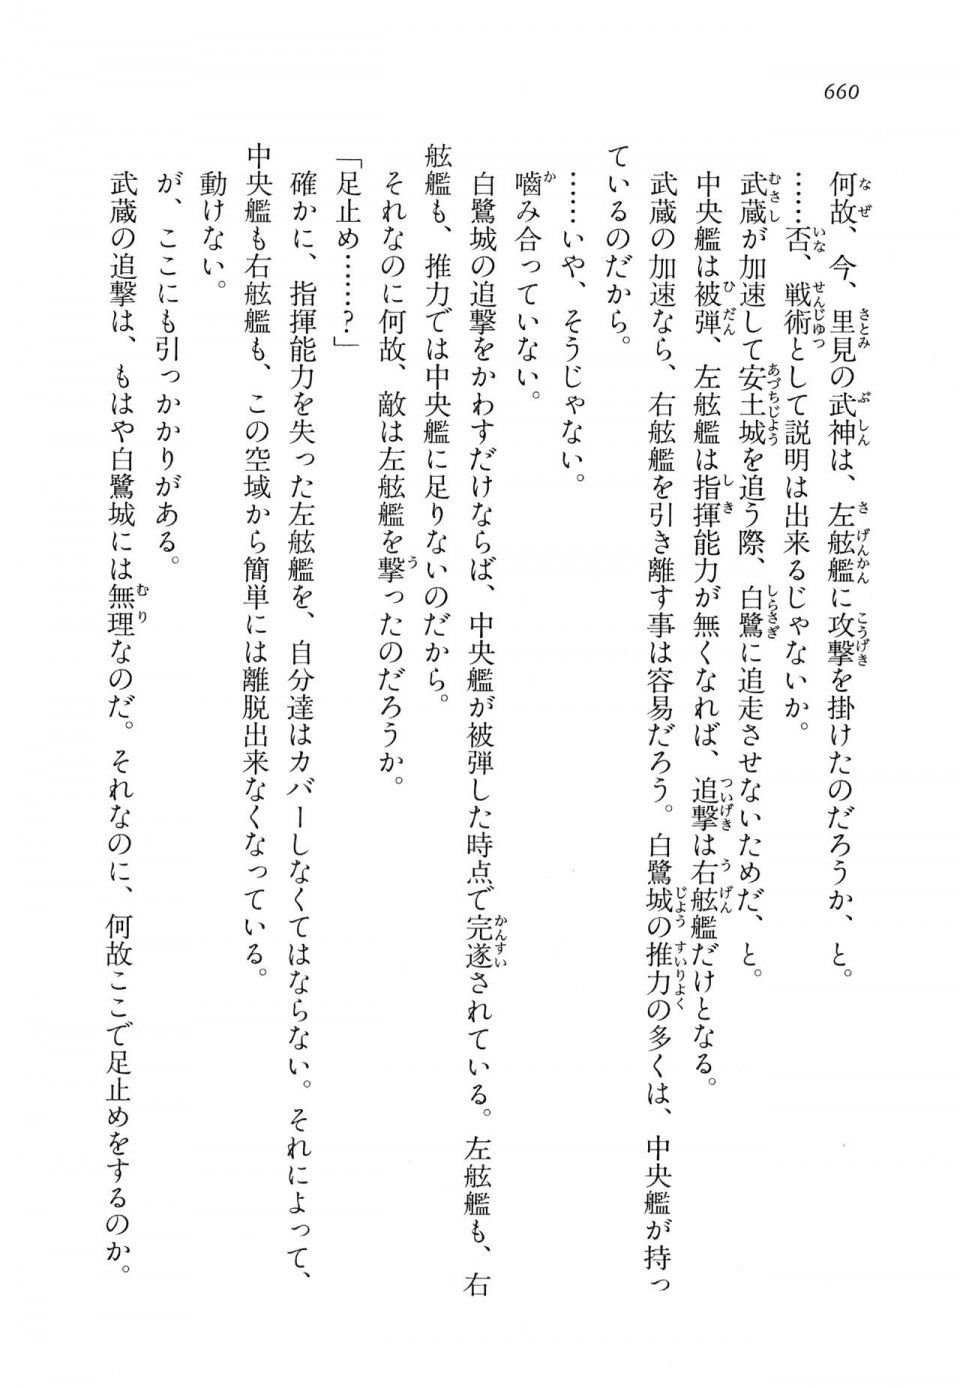 Kyoukai Senjou no Horizon LN Vol 11(5A) - Photo #660